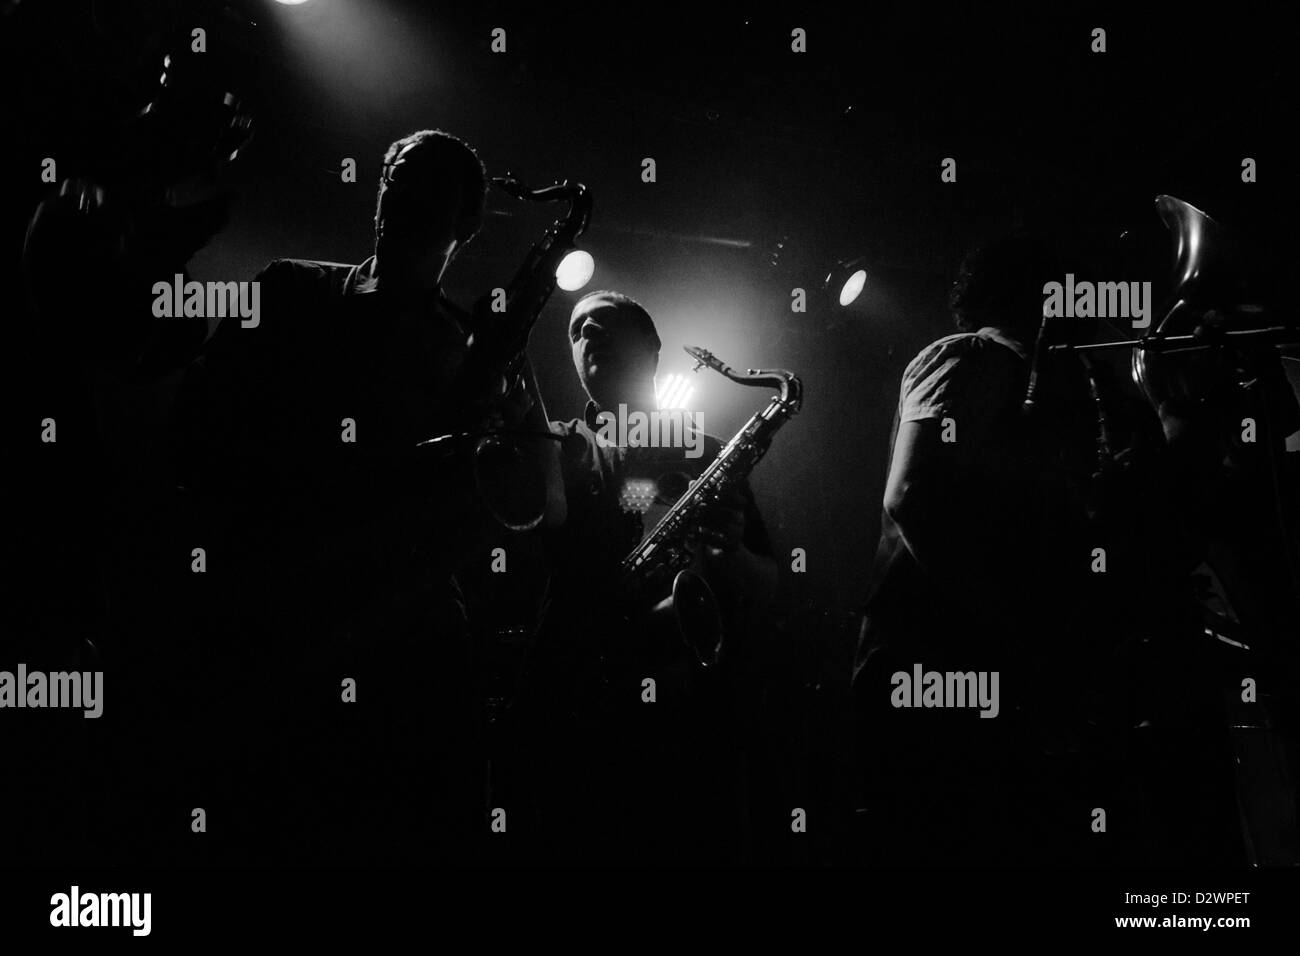 Des silhouettes en noir et blanc de trompette et saxophone joueurs pendant un concert Banque D'Images